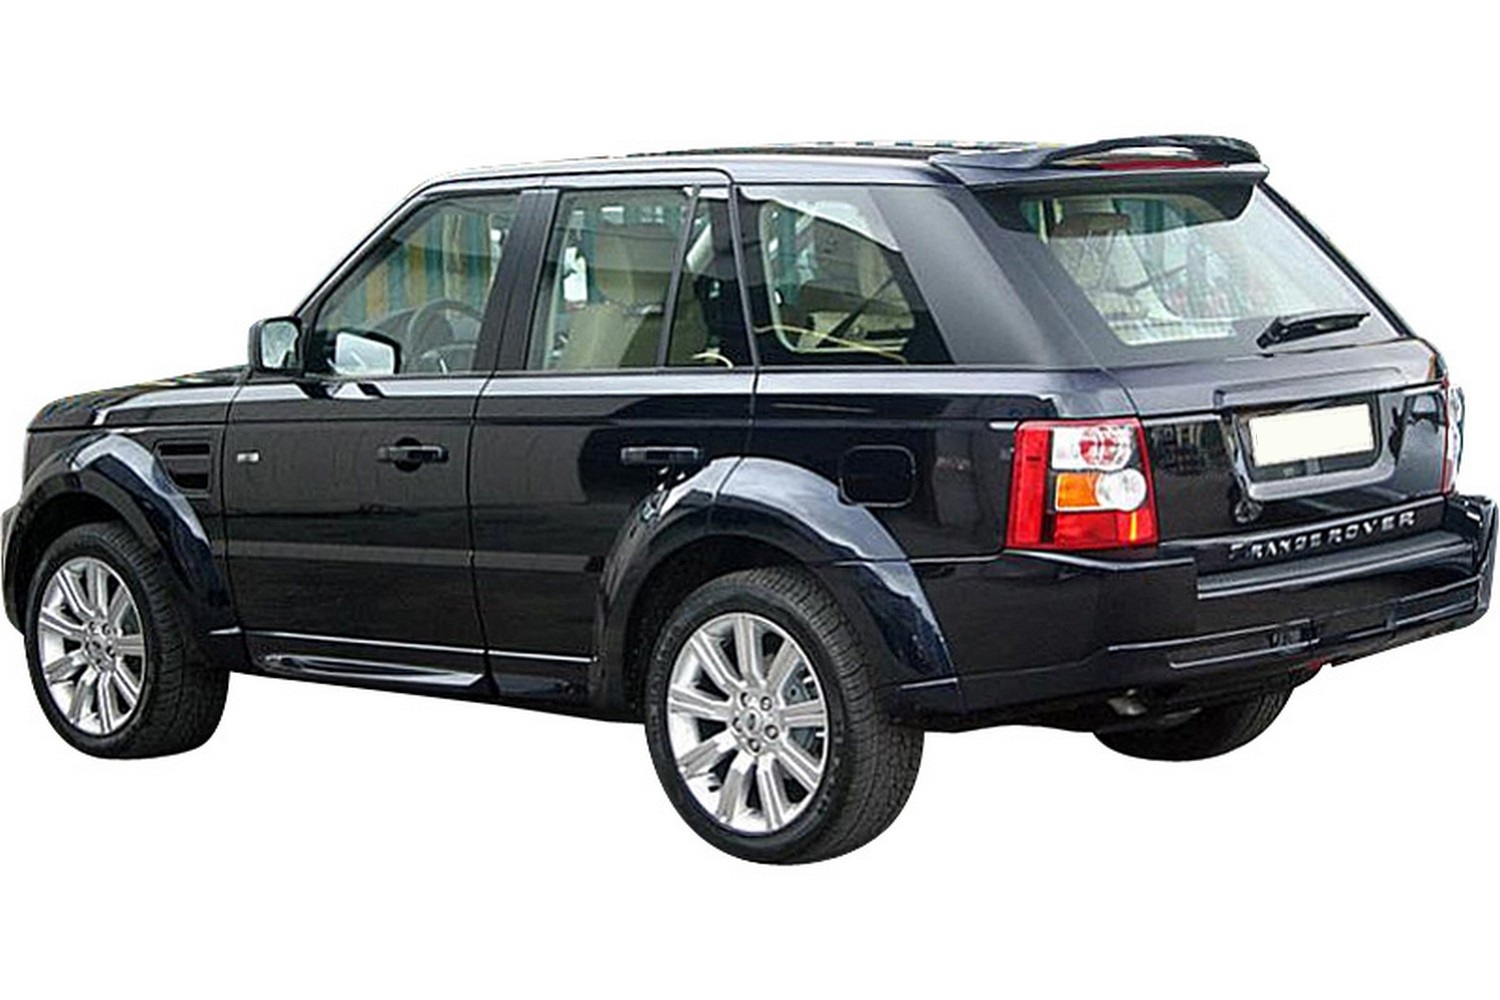 Heckspoiler / Frontspoiler / Lippe für Range Rover günstig bestellen